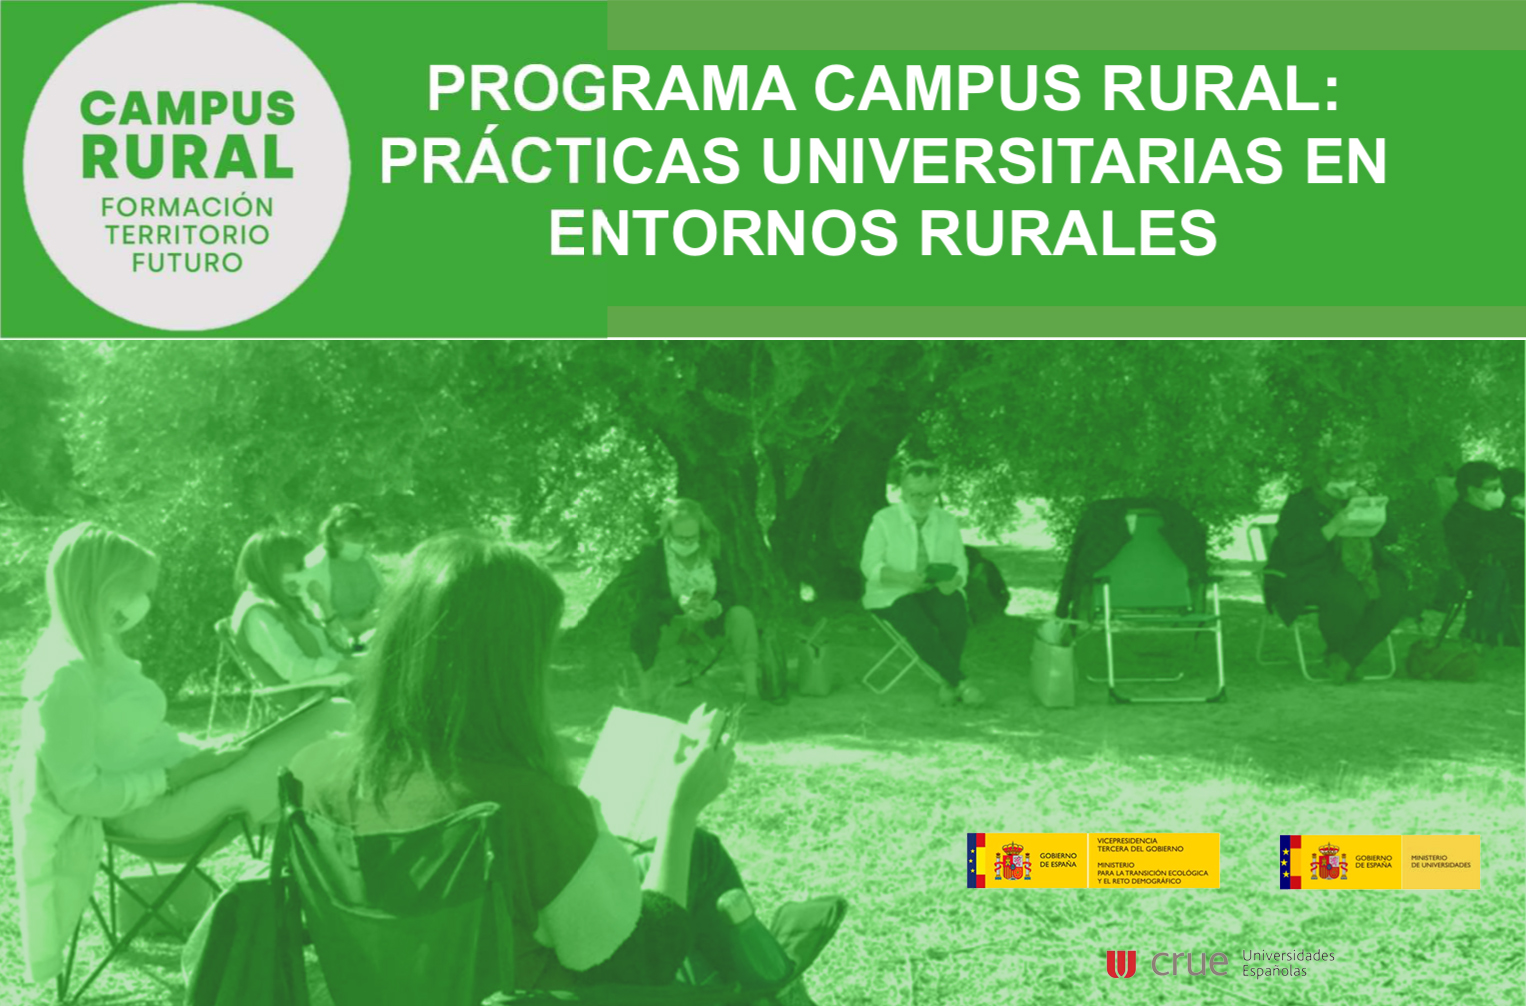 Programa Campus Rural: Prácticas universitarias en entornos rurales